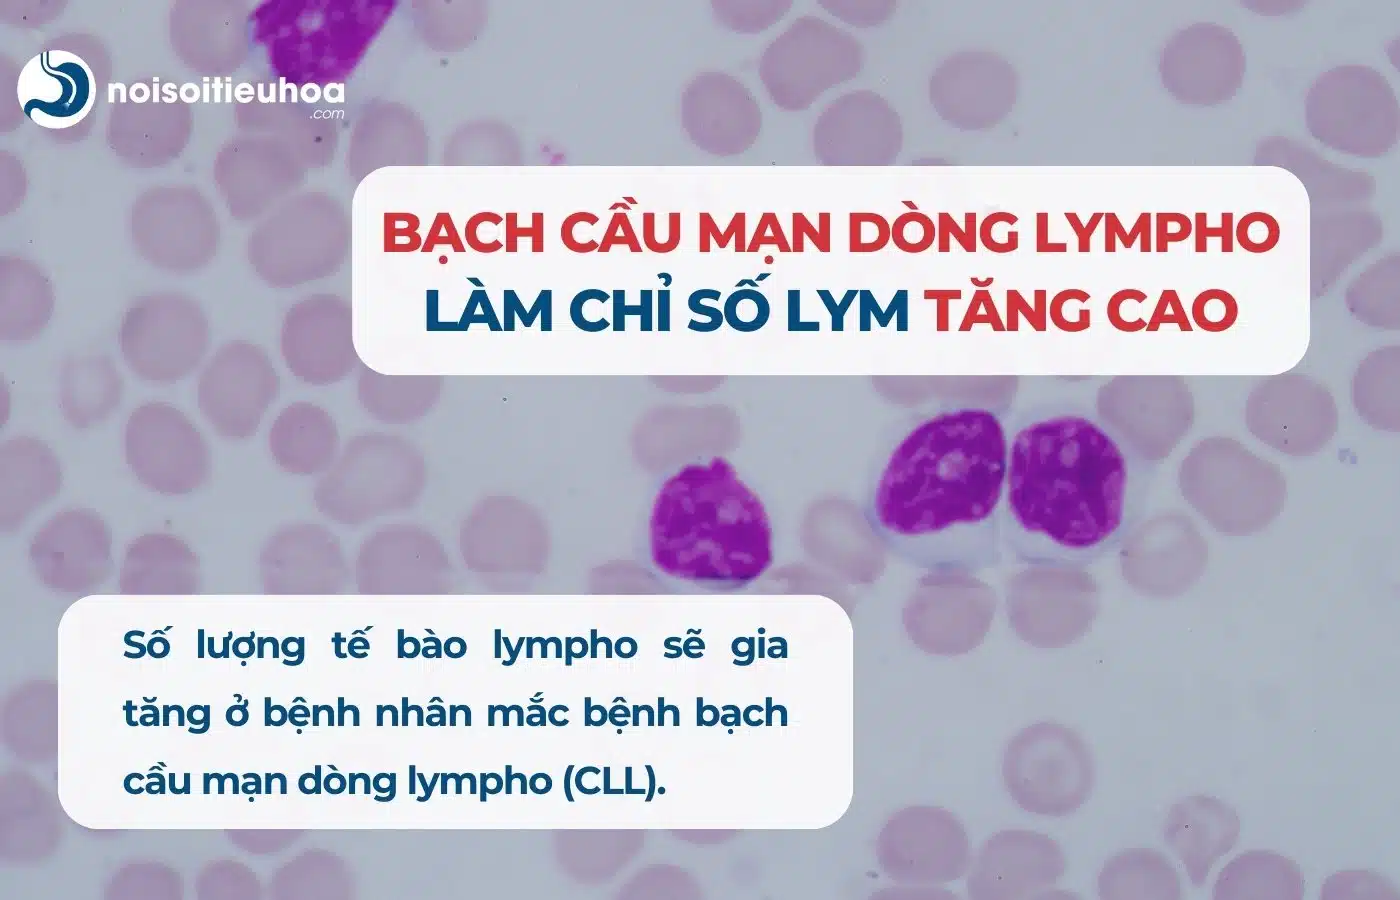 Bạch cầu mạn dòng lympho (CLL) làm chỉ số LYM tăng cao